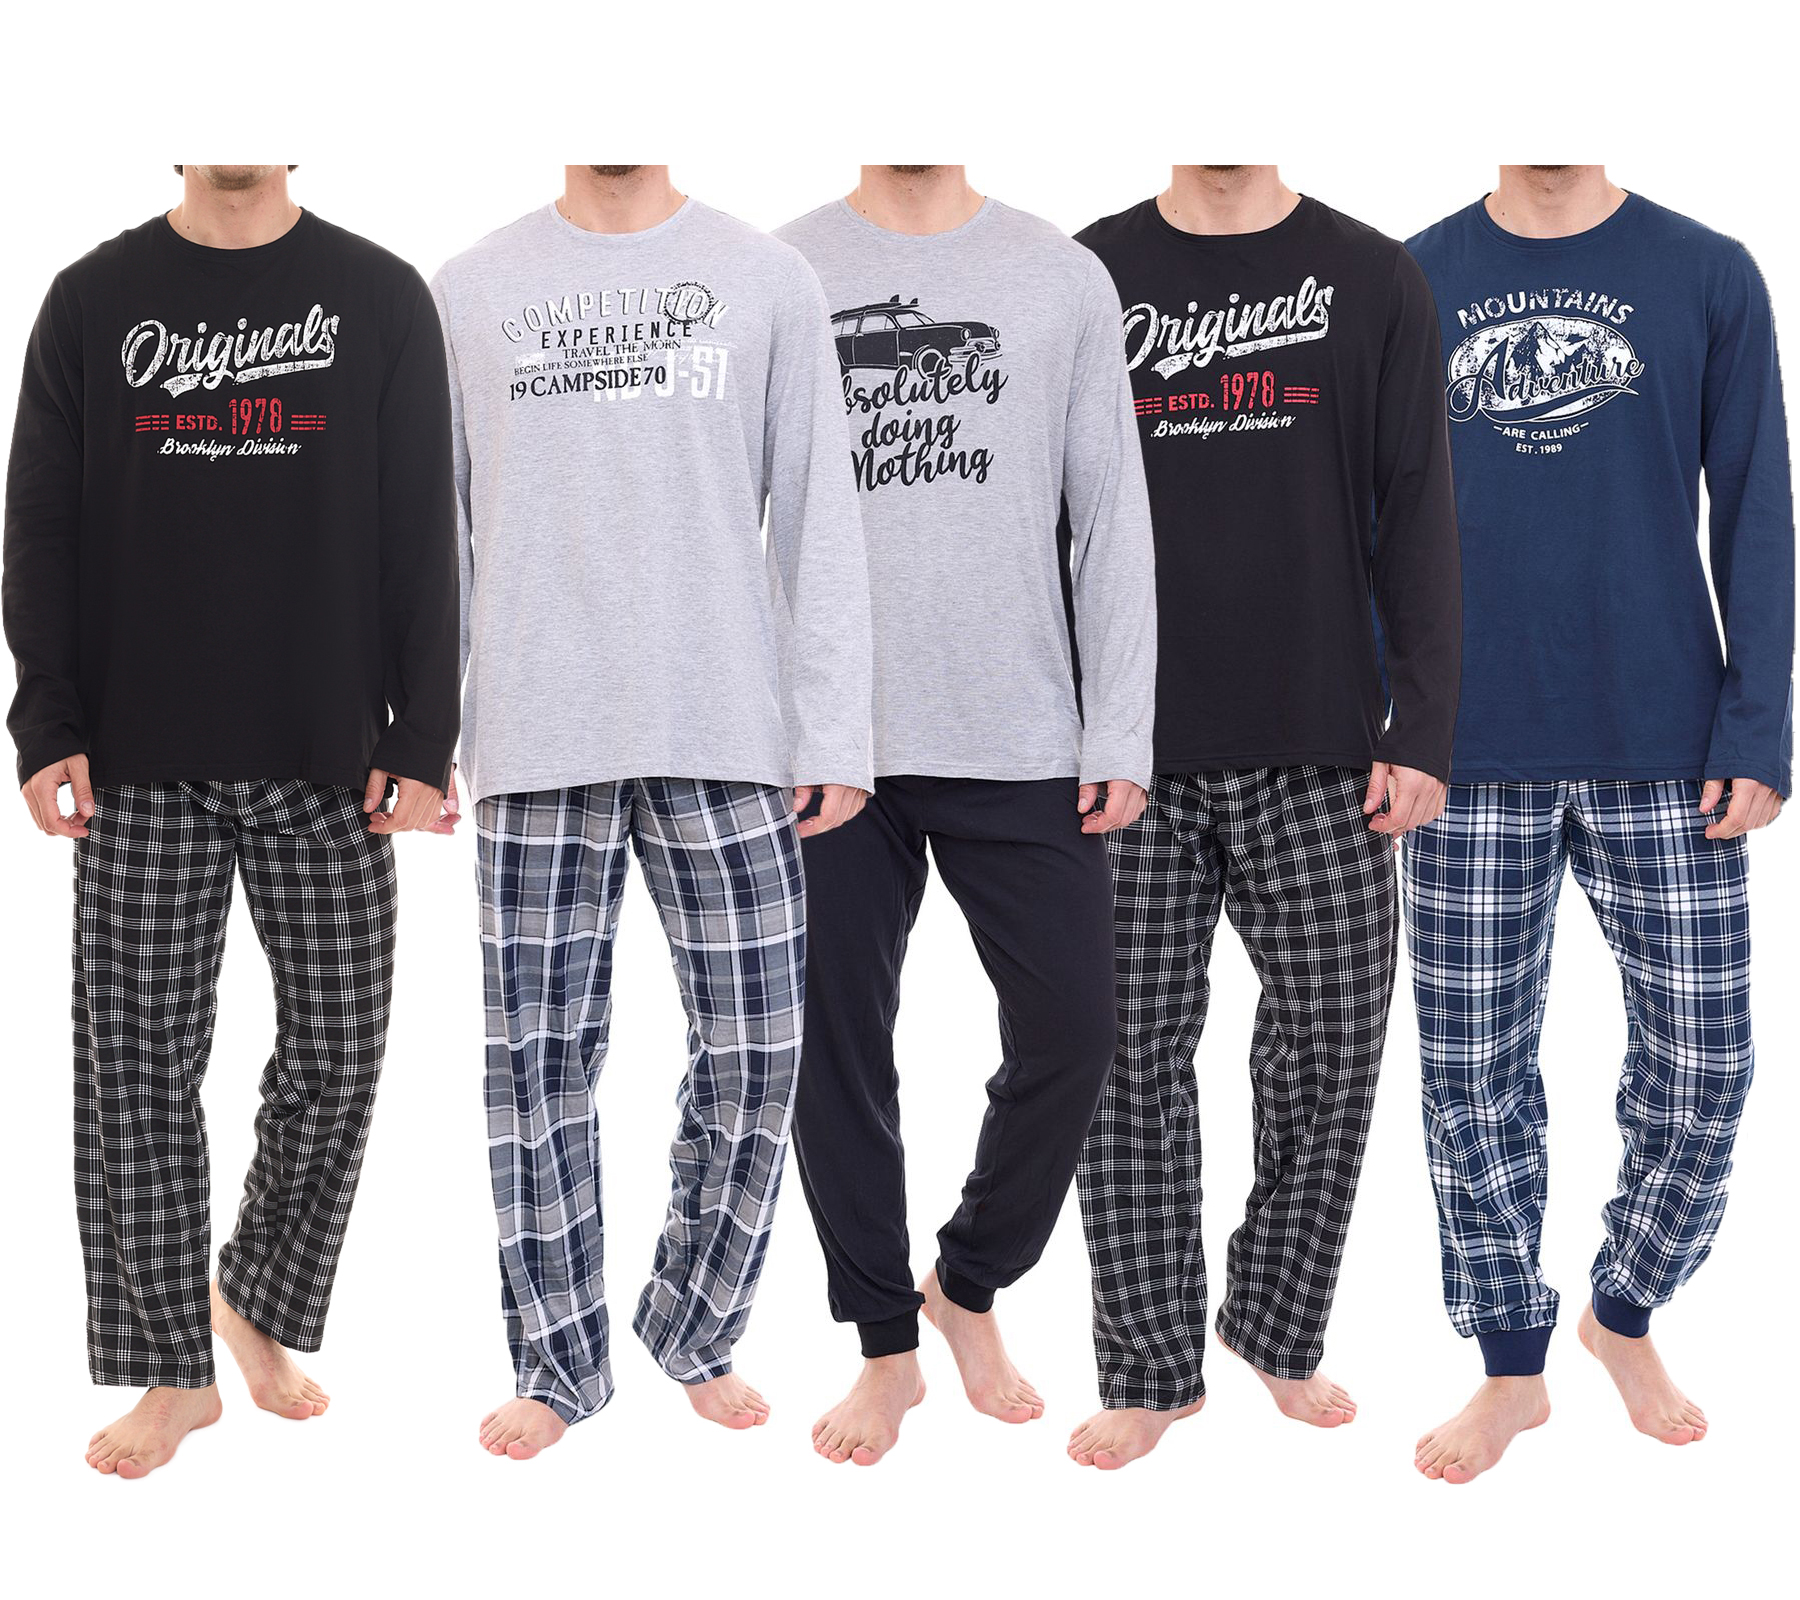 AM Legend Herren Pyjama-Set 2-teilig karierter oder unifarbener Schlafanzug aus 100%Baumwolle IAN MPJ 23 Schwarz, Navy, Grau in verschiedenen Modellen von AM Legend